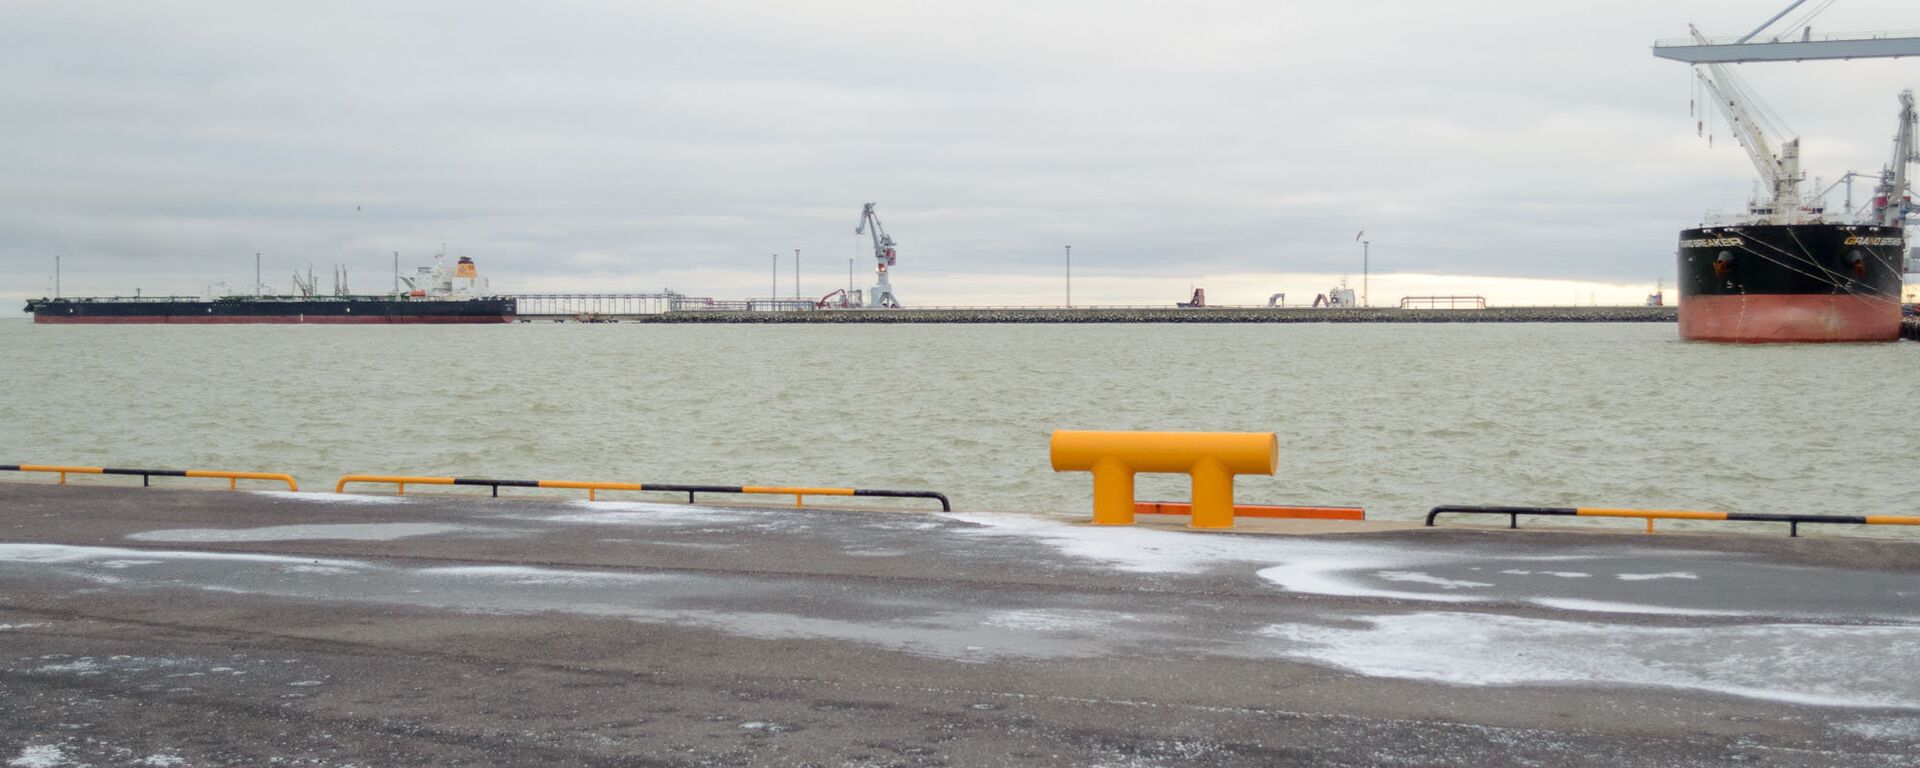 Порт Силламяэ называют морскими воротами Ида-Вирумаа - Sputnik Латвия, 1920, 02.05.2021